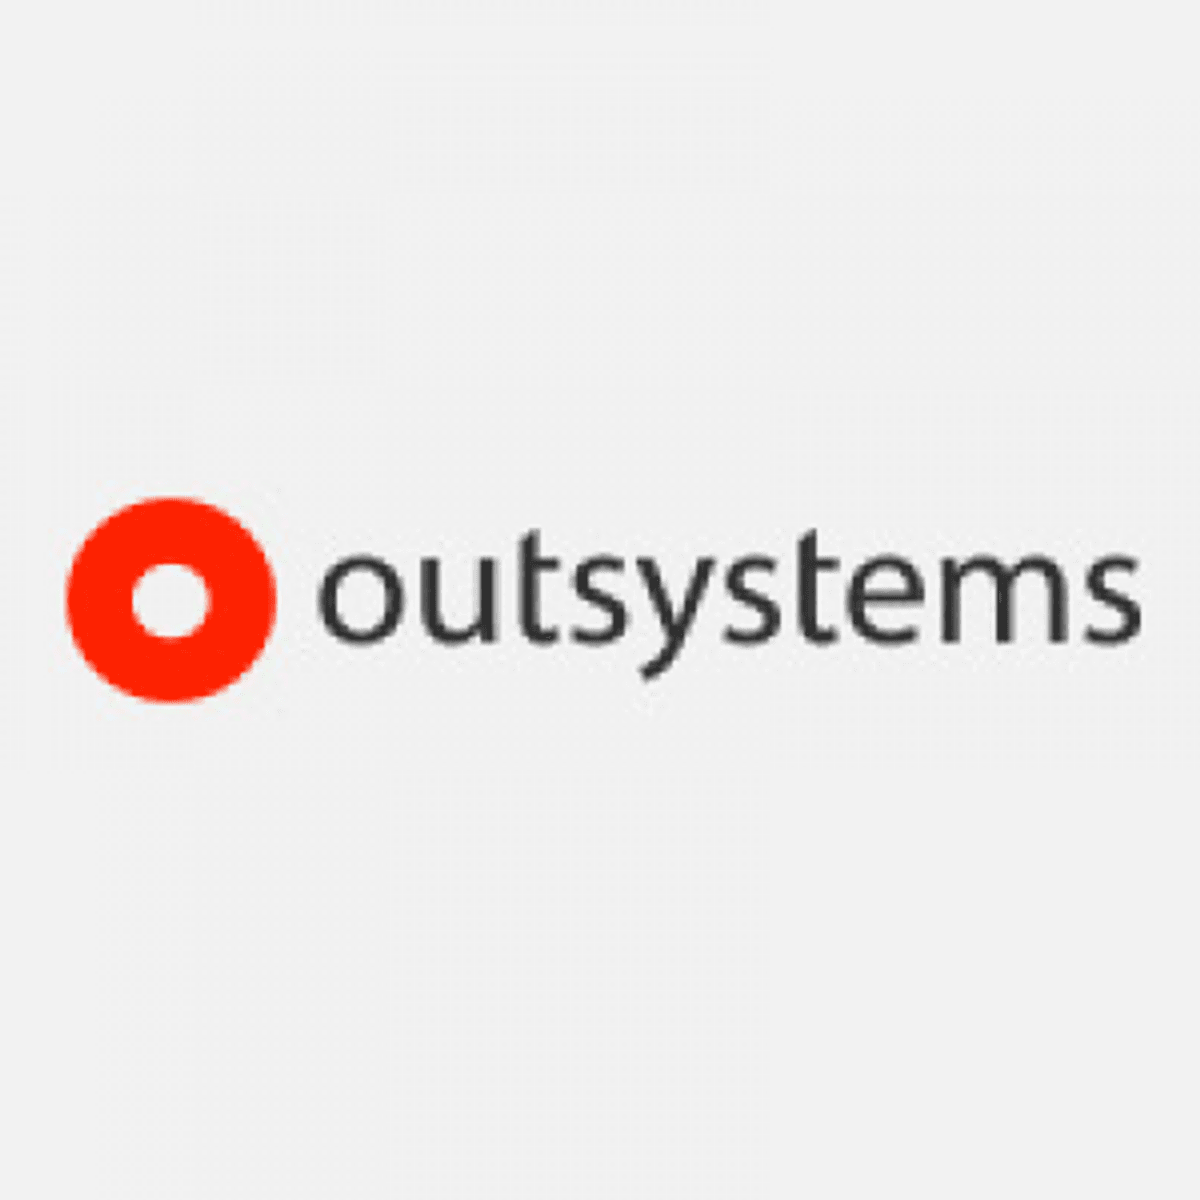 Noesis breidt OutSystems activiteiten in Nederland uit image